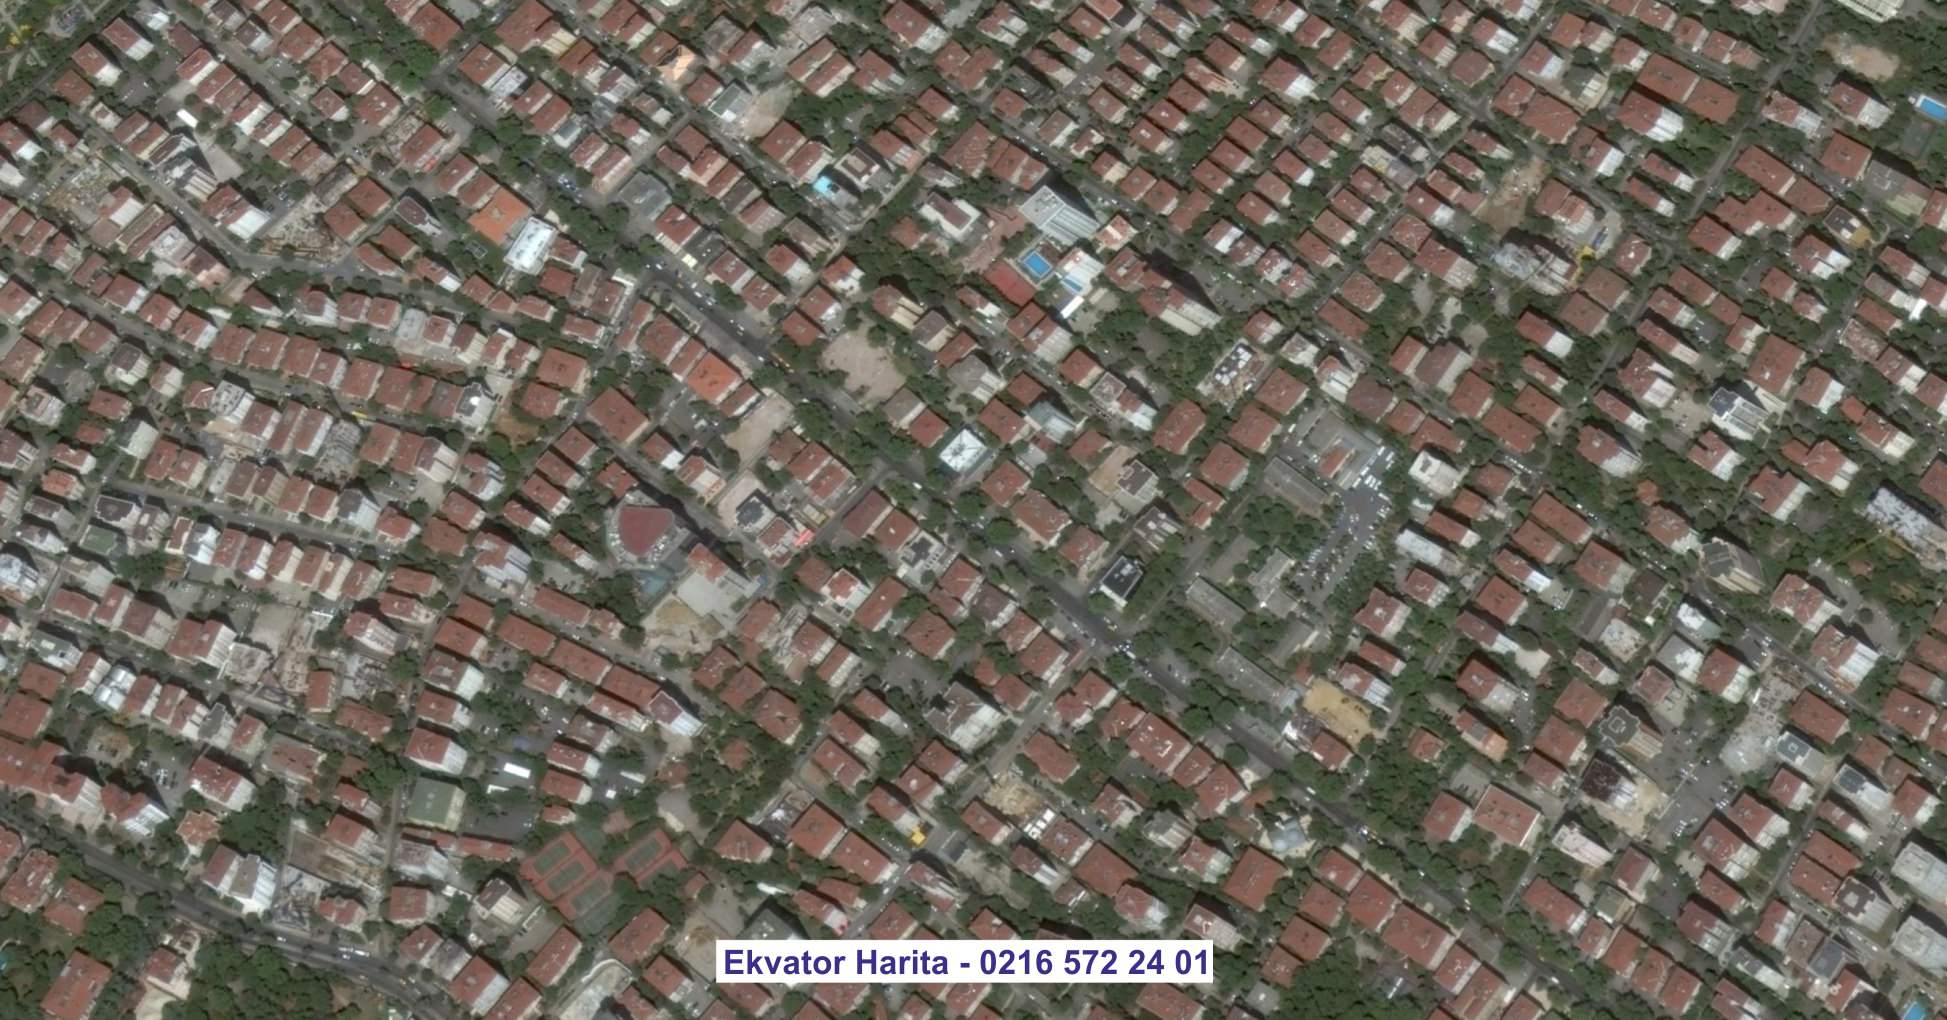 Bilecik Uydu Görüntüsü Örnek Fotoğrafı